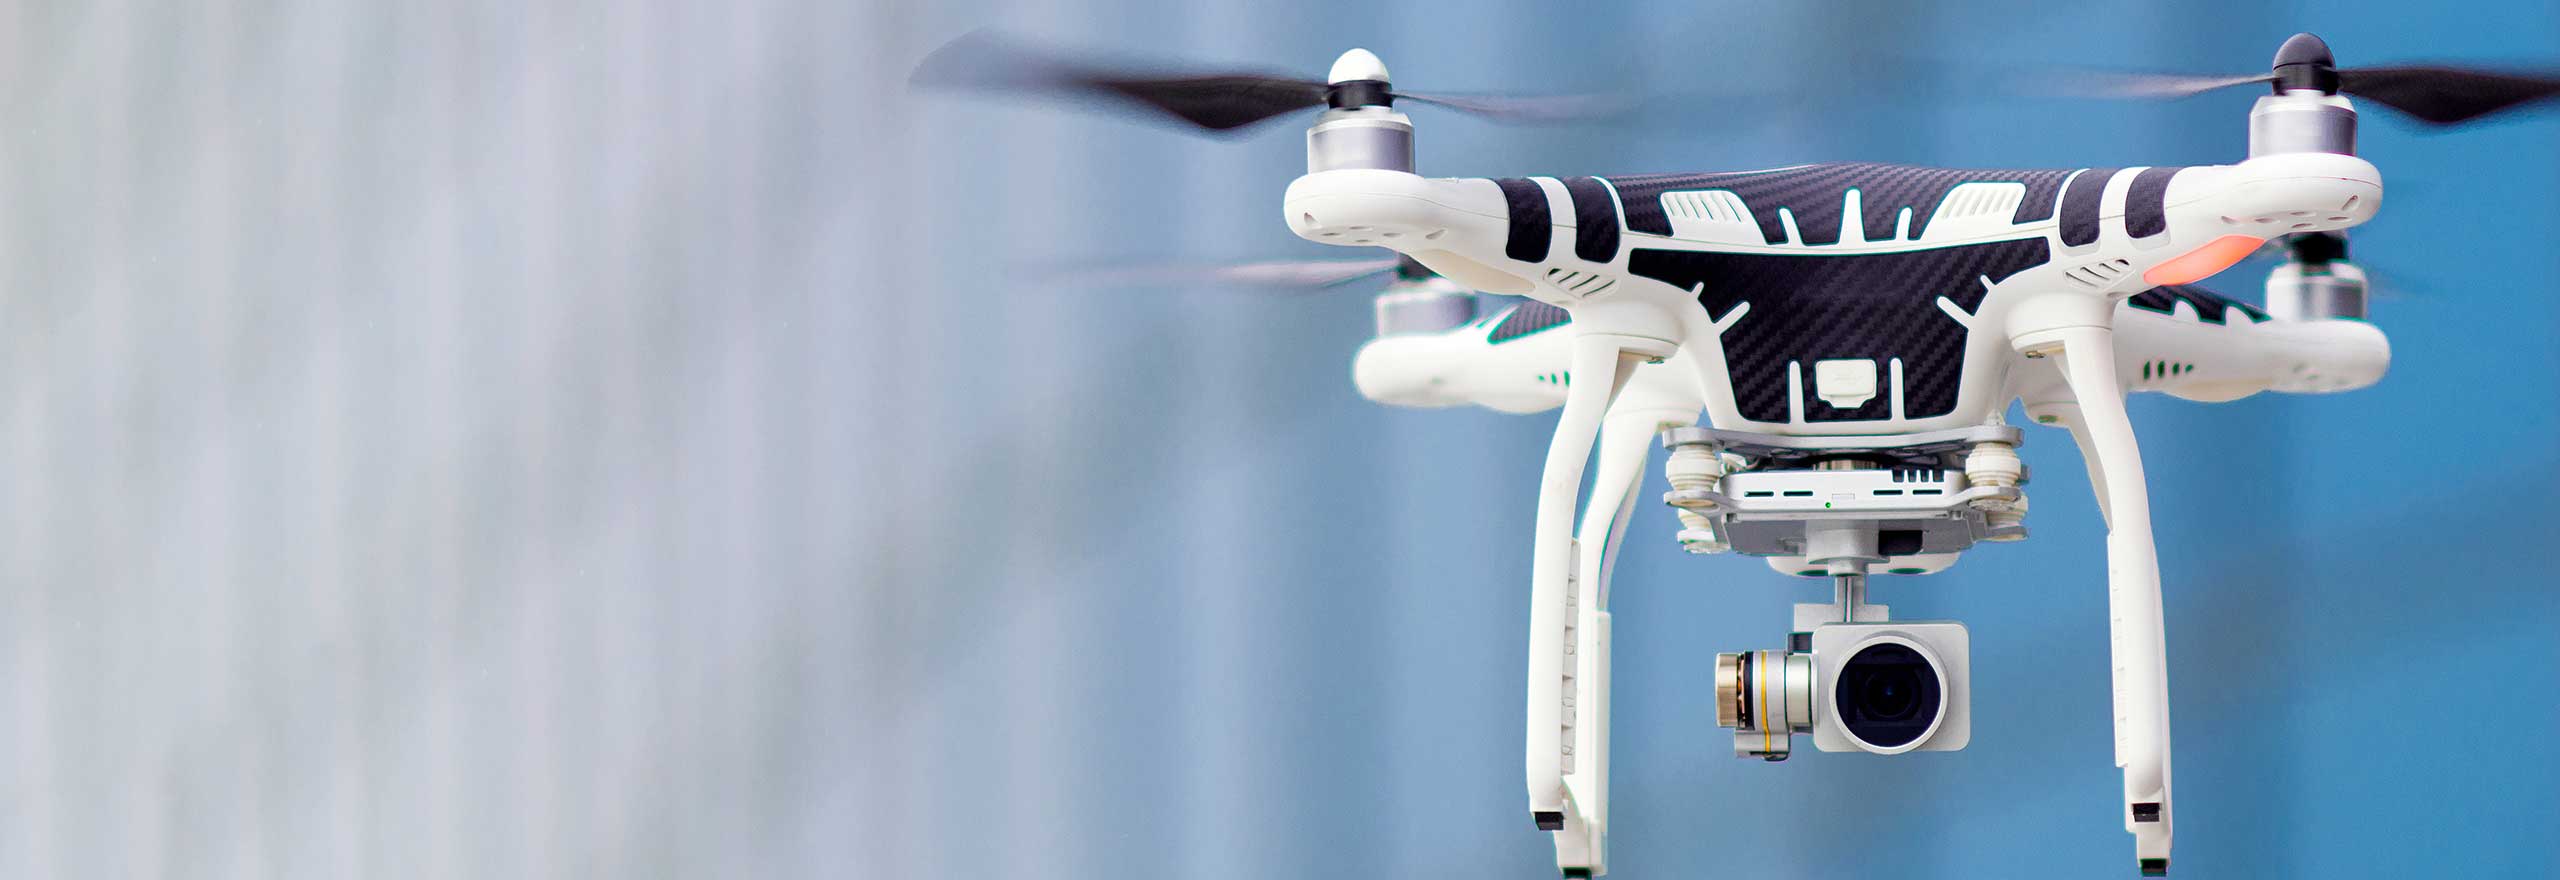 Drone in bilico con telecamera su sfondo blu